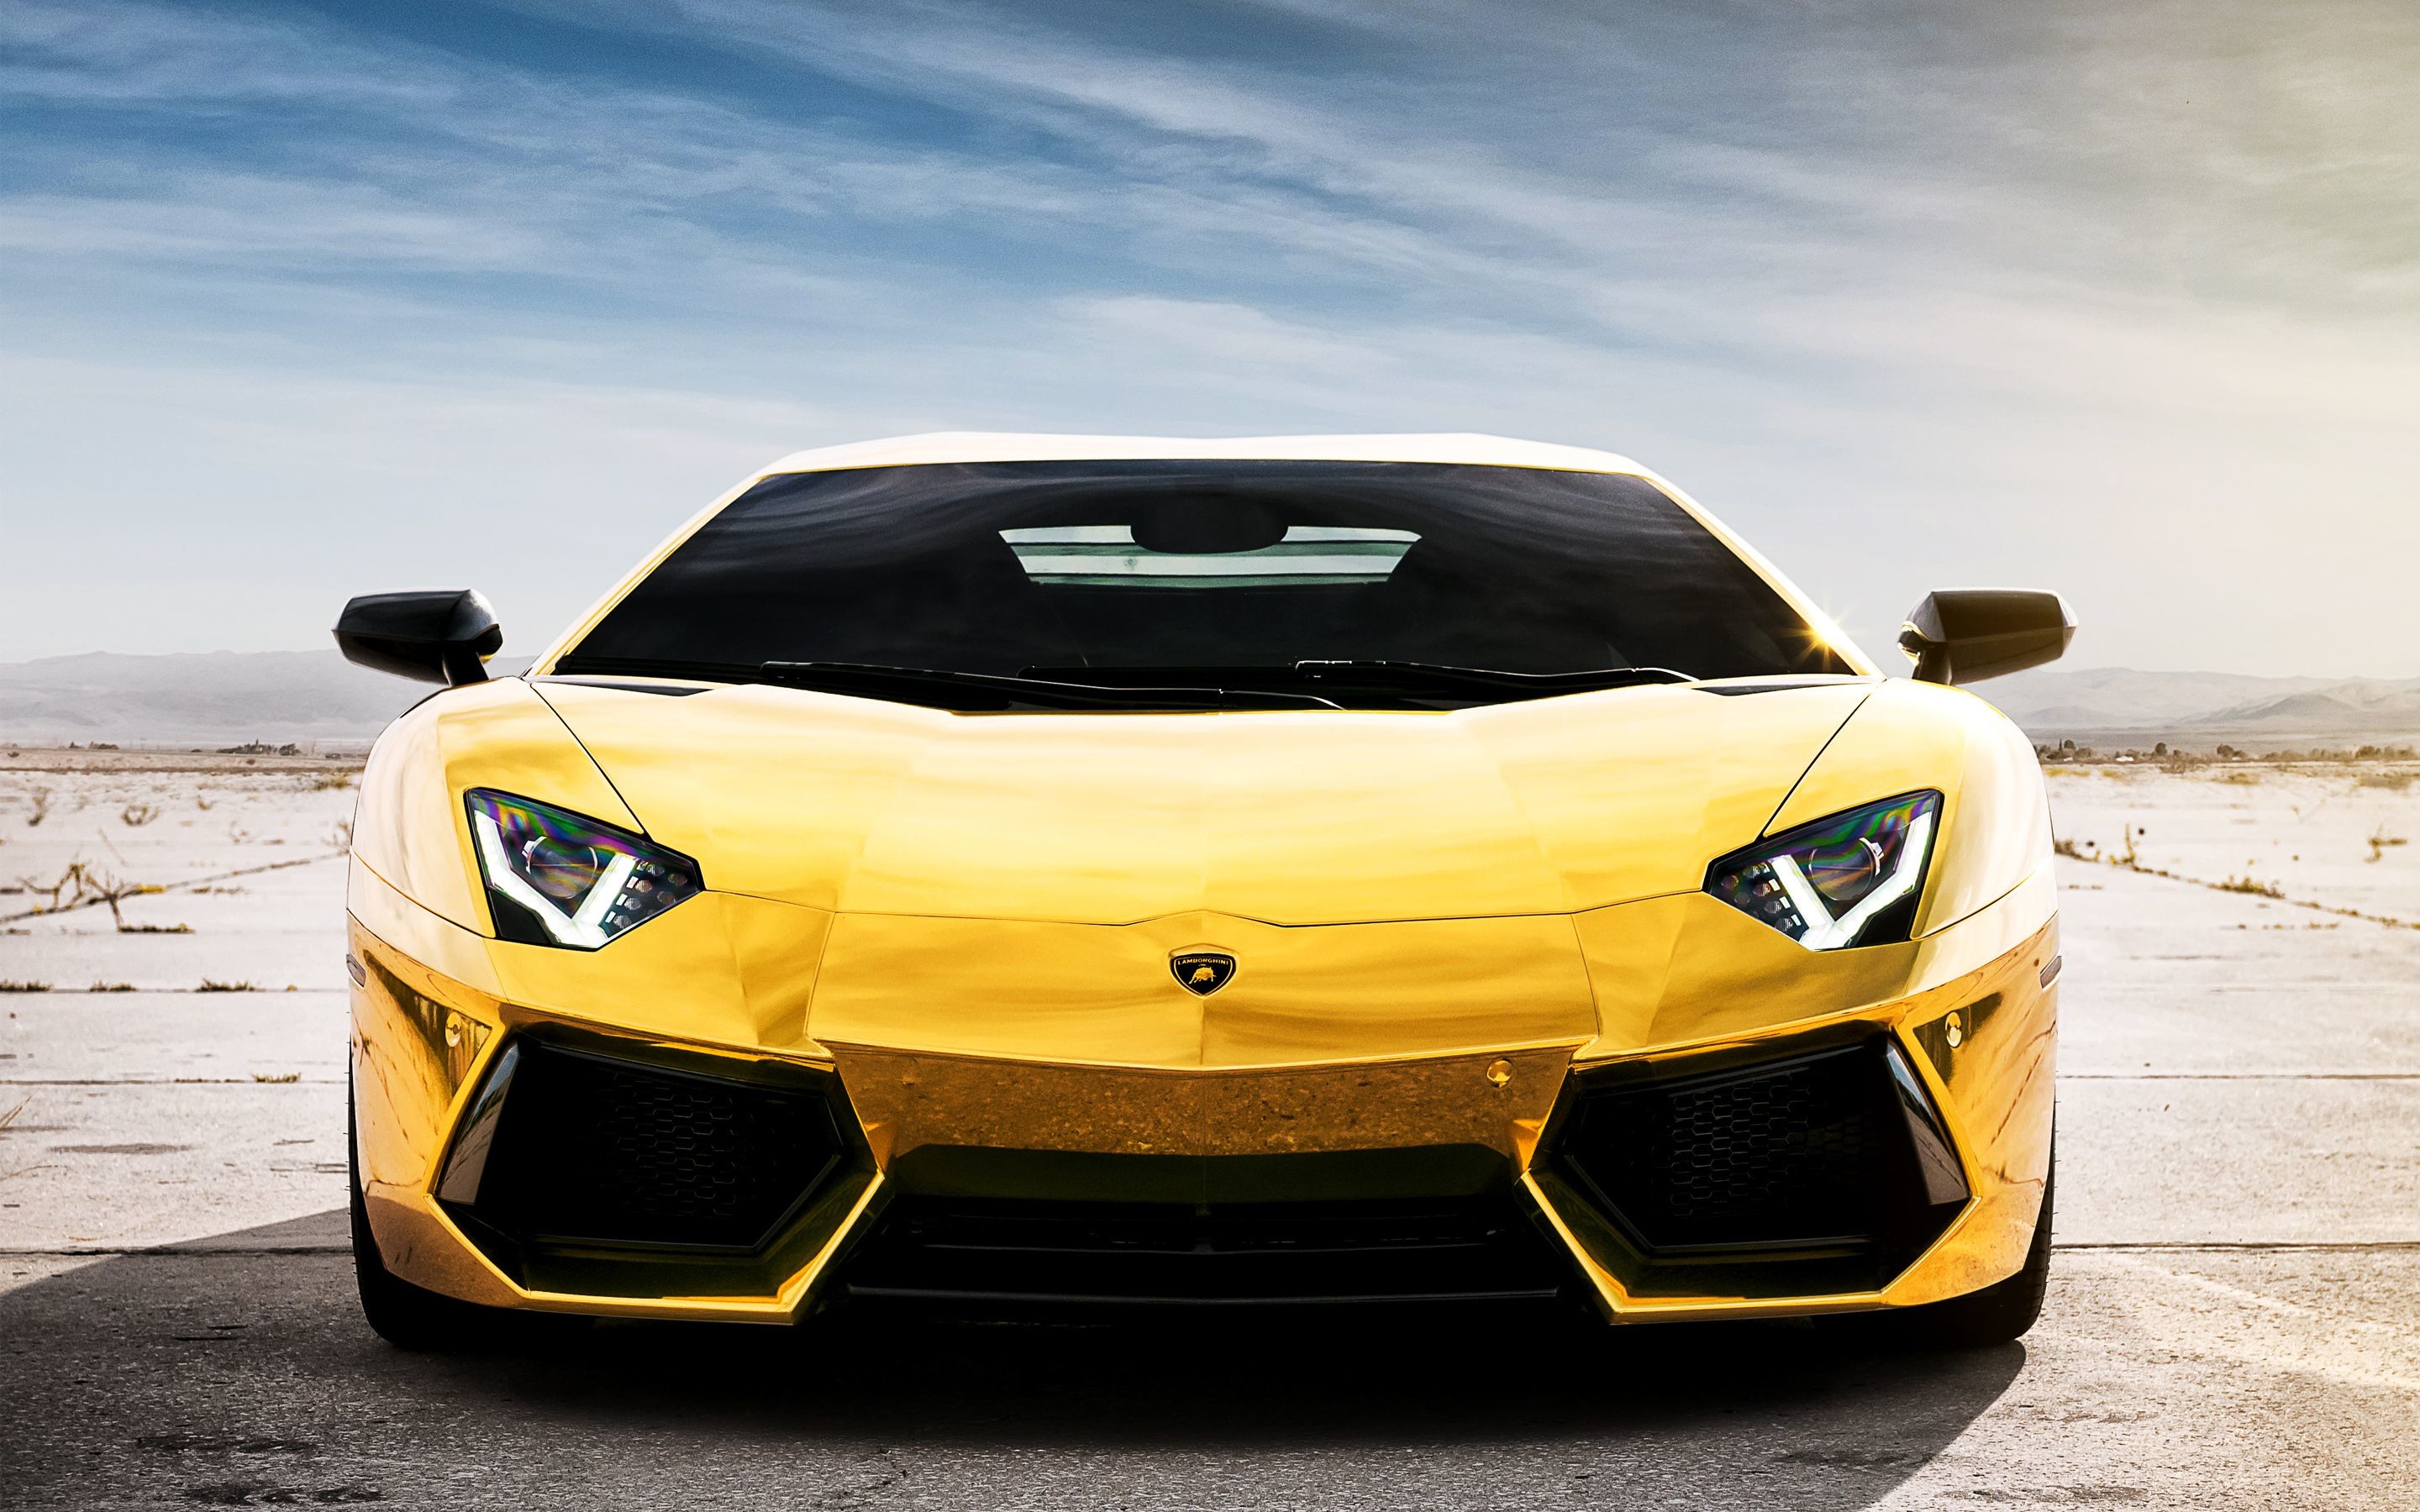 28+] Gold Lamborghini Wallpapers - WallpaperSafari